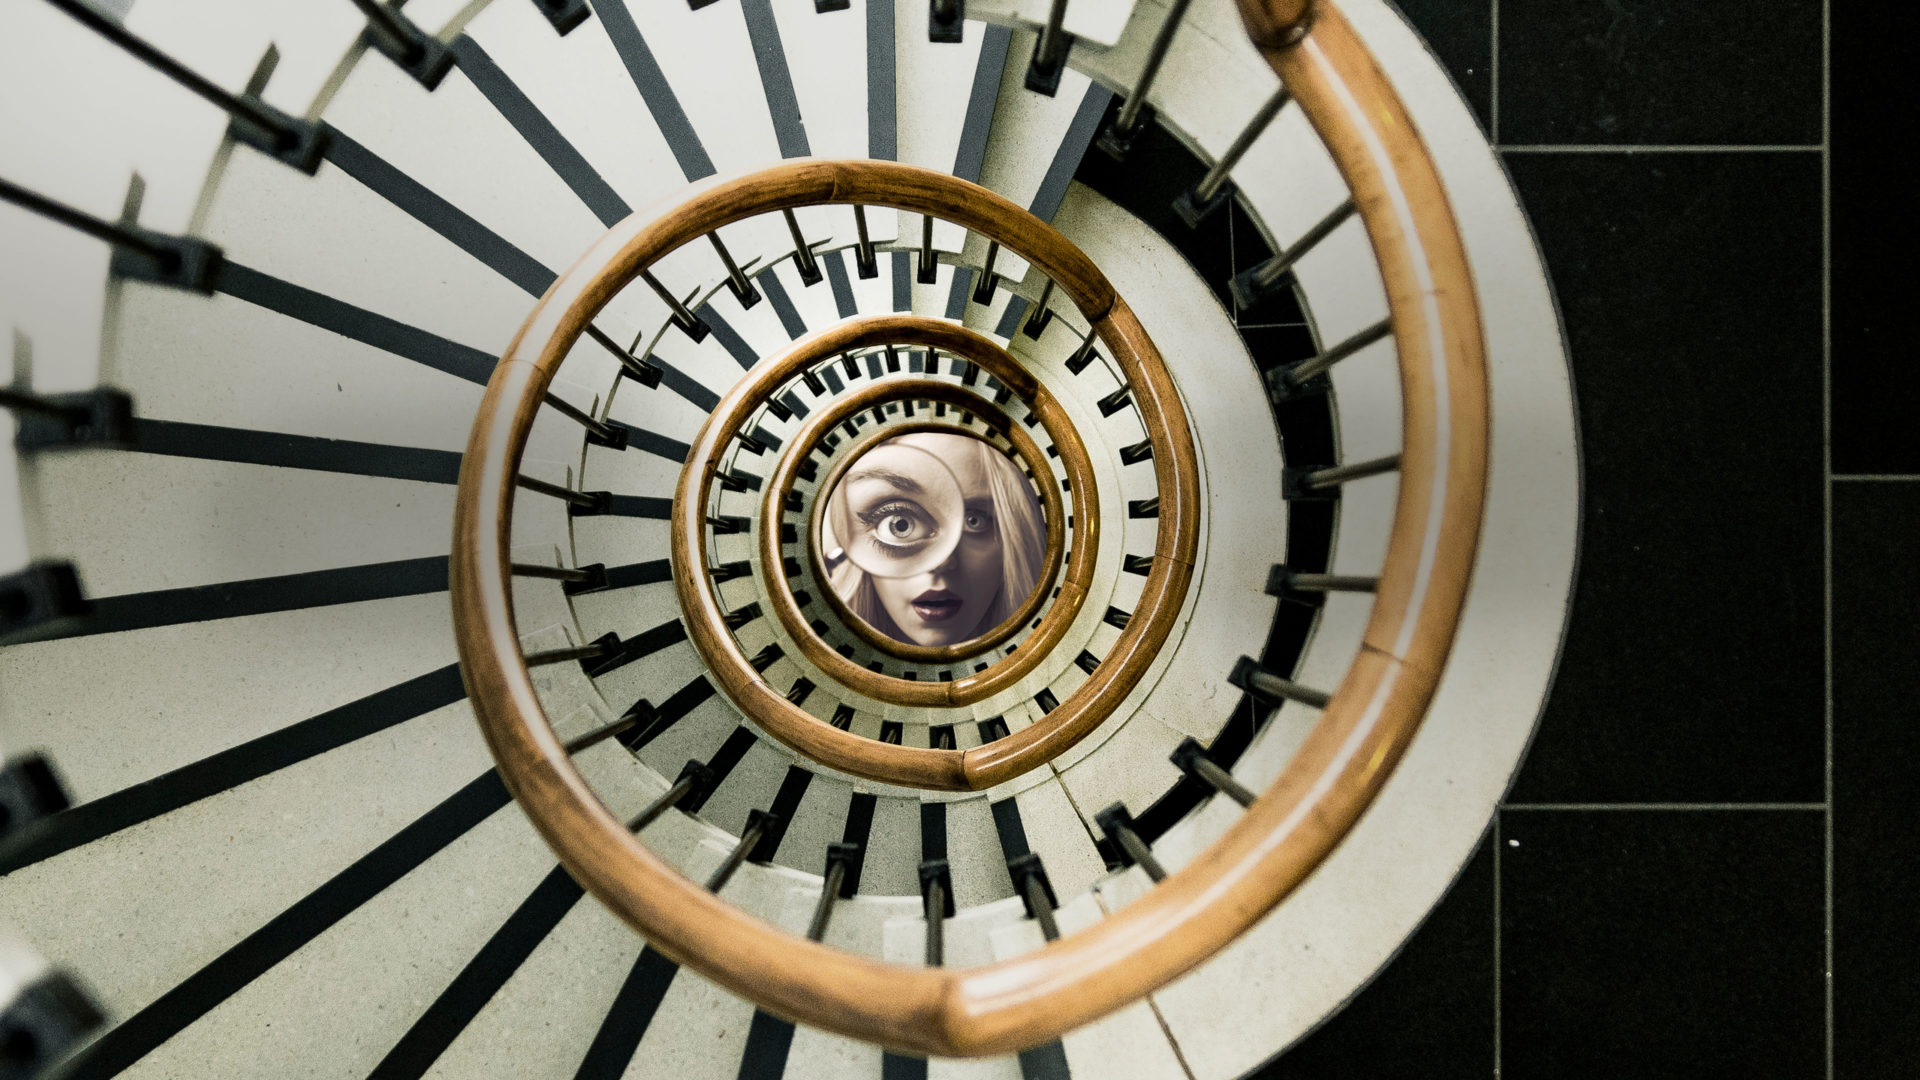 En filmaffisch som visar en spiraltrappa. I mitten av spiralen ses en ung kvinna med ett förstoringsglas.